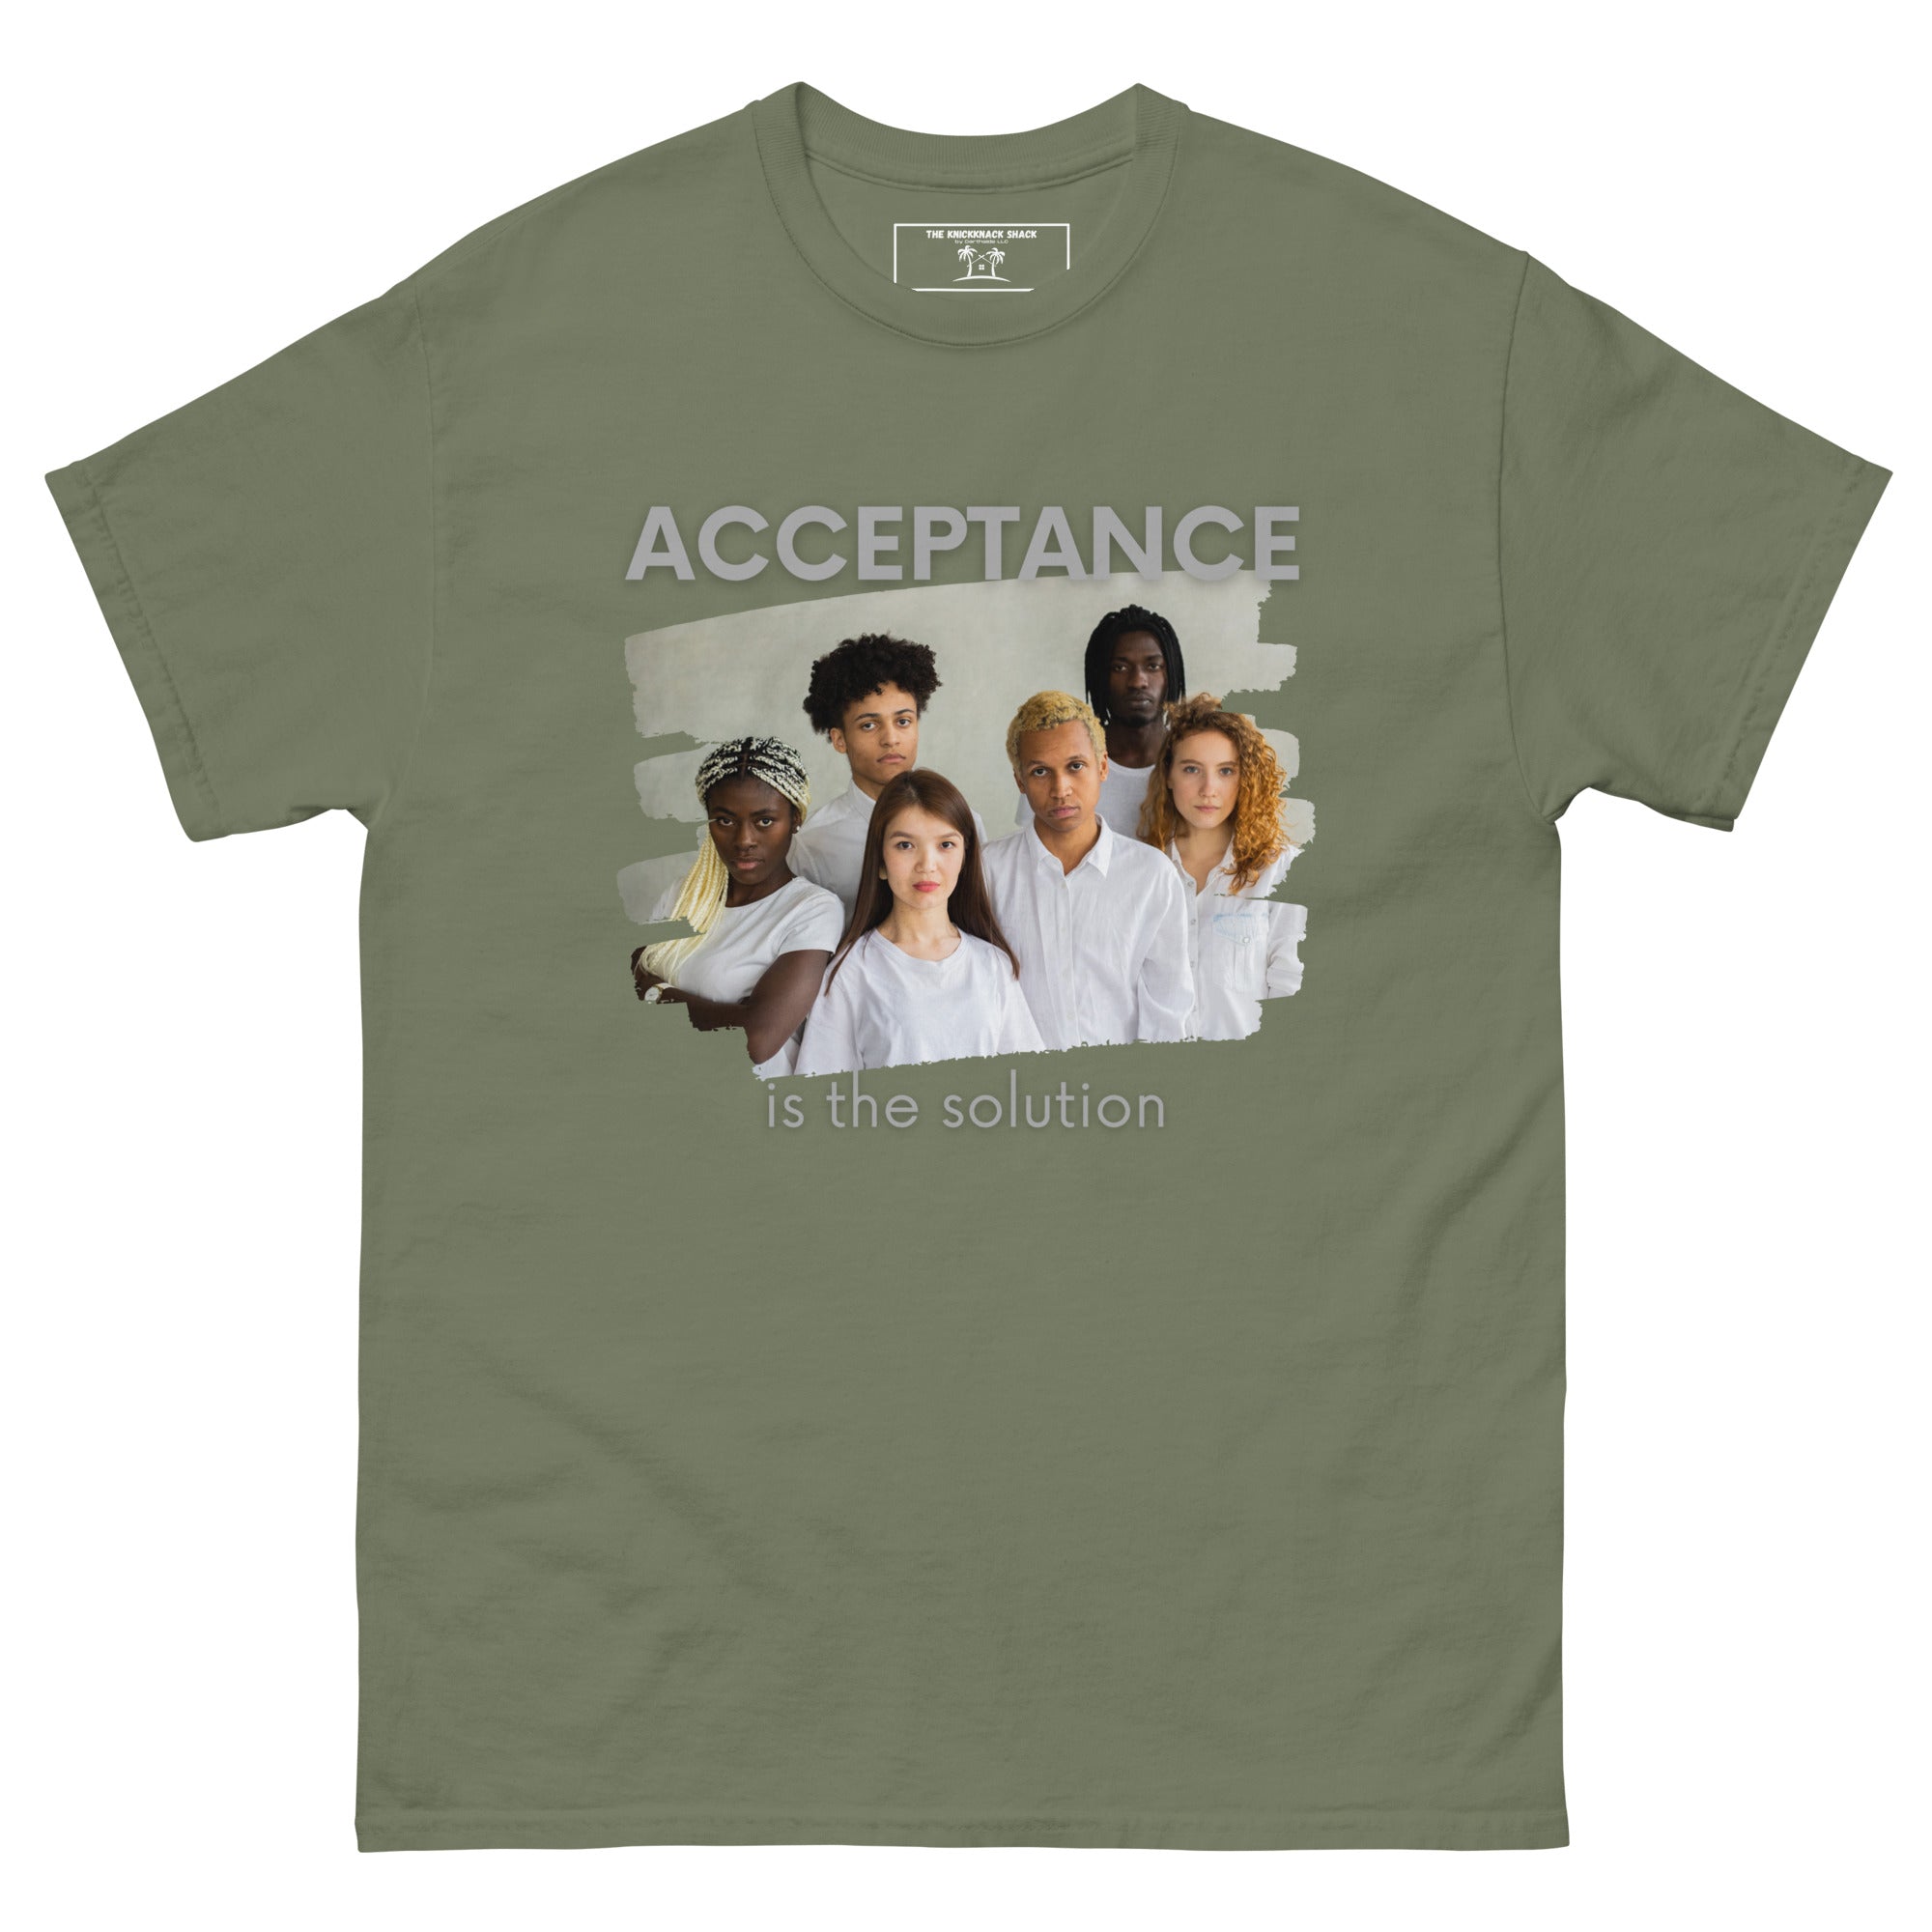 Tee-shirt classique - Acceptation (couleurs sombres)